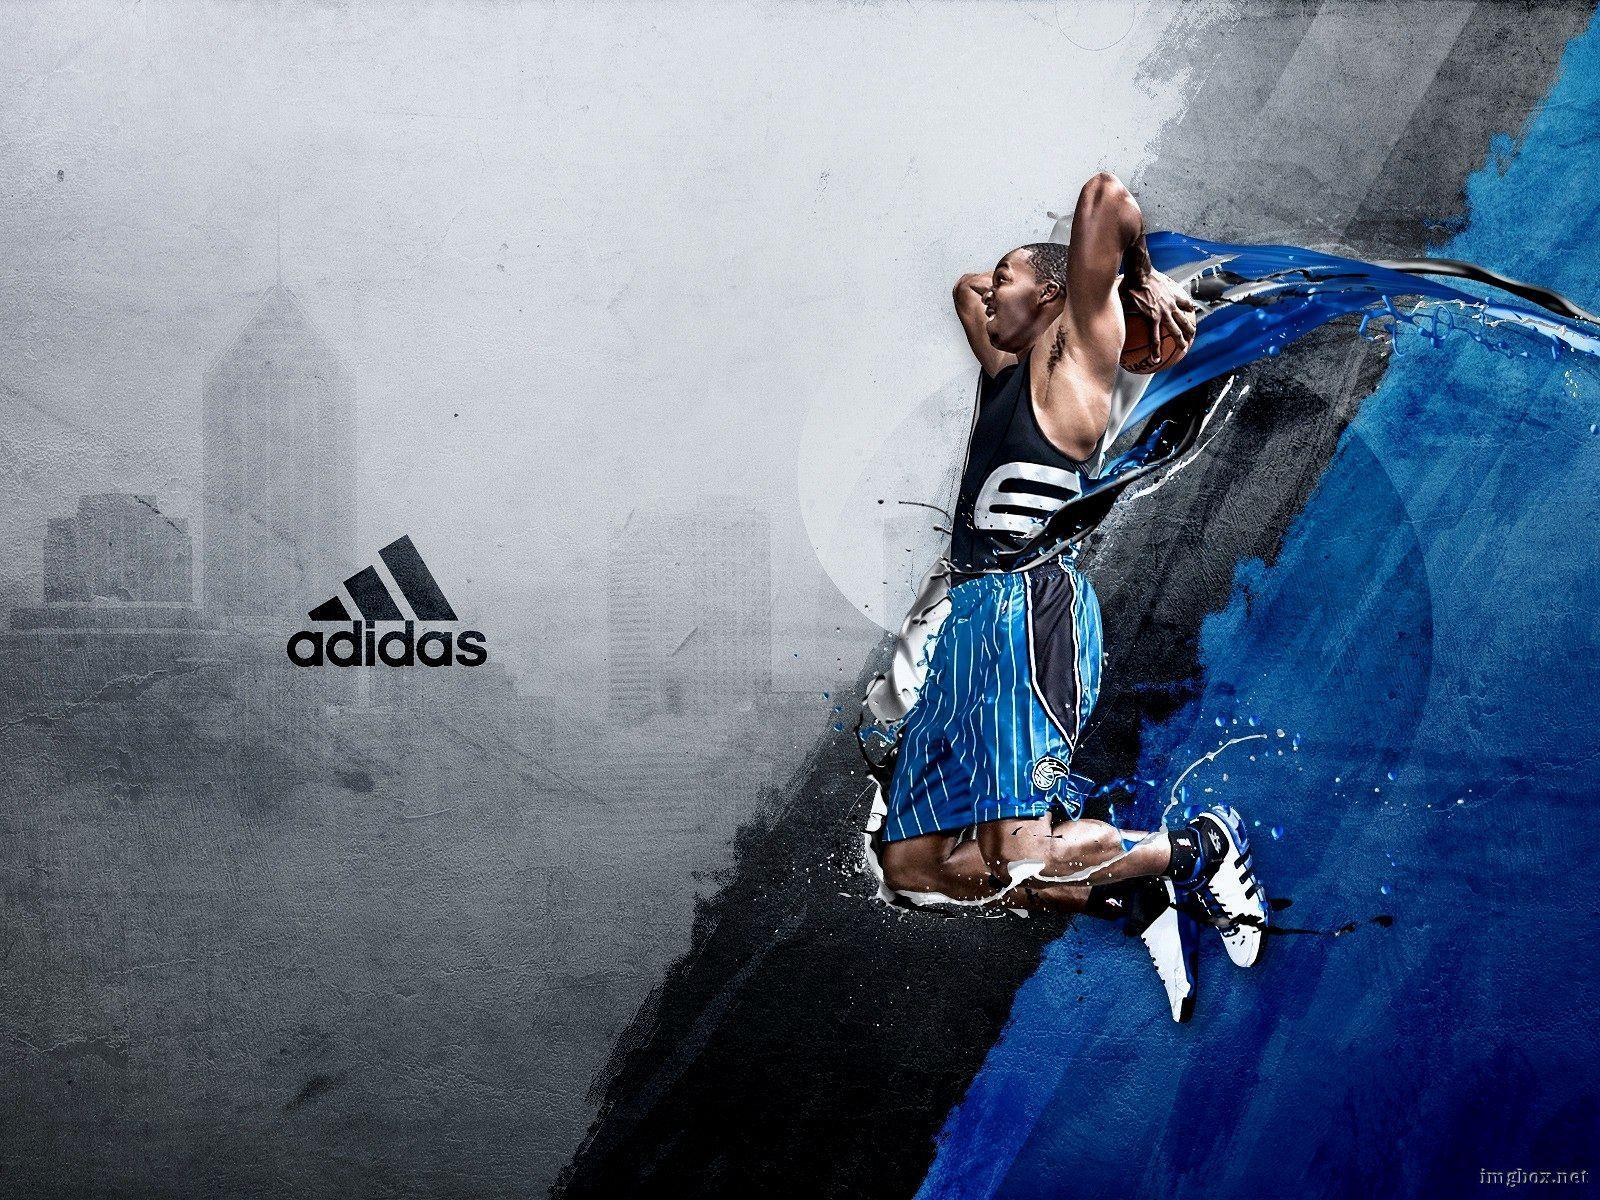 Adidas Basketball Wallpaper. Image Box Wallpaper